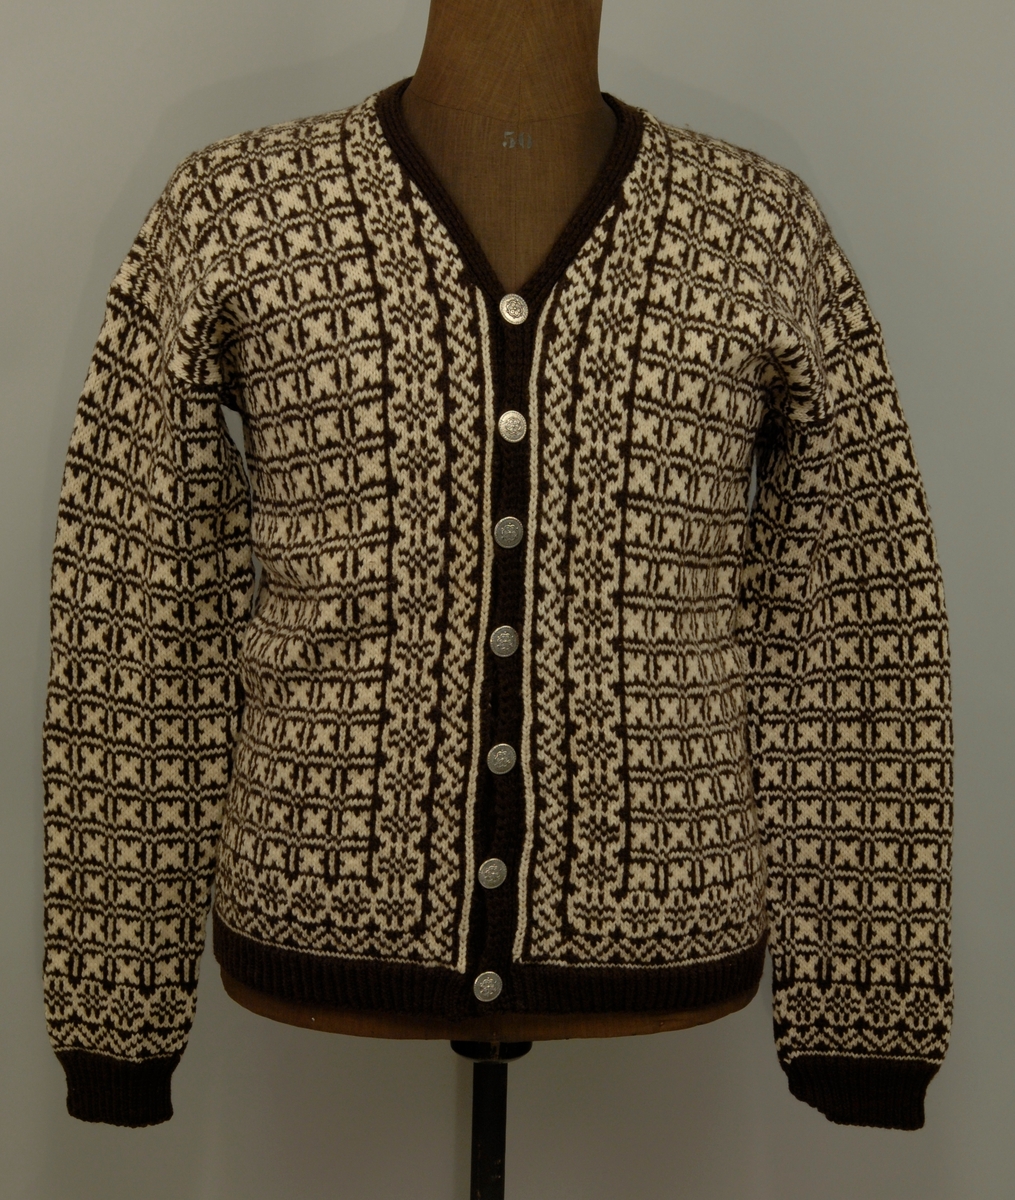 Strikket jakke med lange ermer i to farger. 7 metallknapper. Modell Weekend av Triplex.